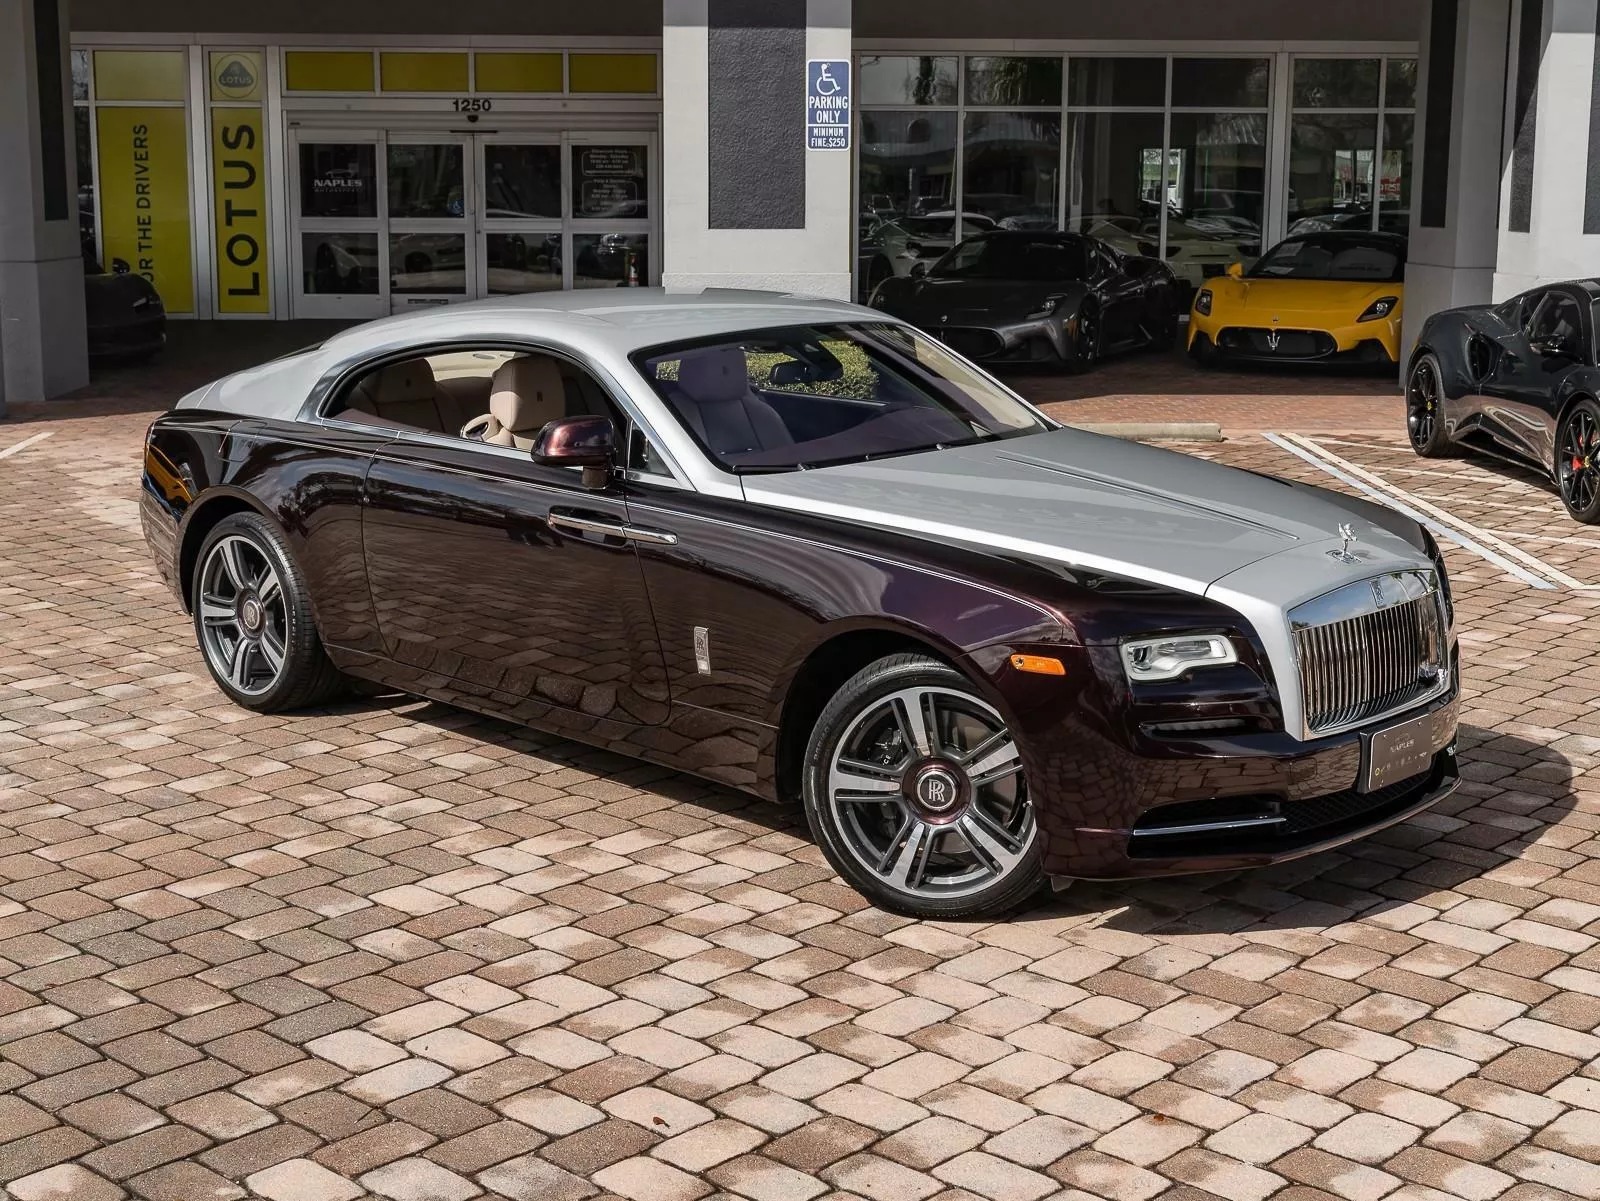 Rao bán Bugatti Chiron giá quy đổi hơn 95 tỷ đồng, chủ xe hứa tặng kèm Rolls-Royce Wraith hợp tông màu- Ảnh 7.